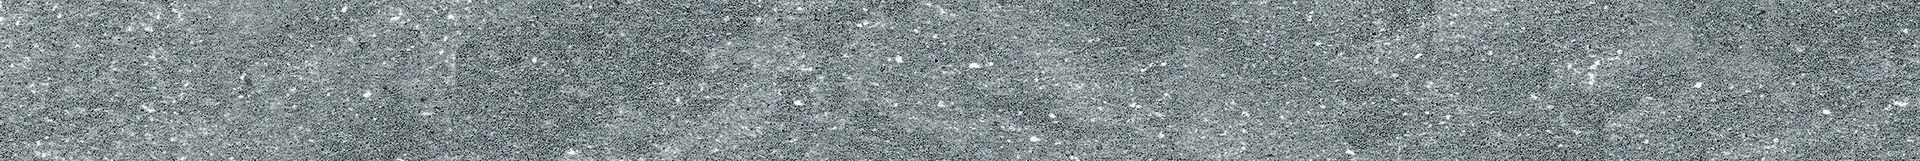 Плитка из керамогранита матовая Italon Дженезис 7.2x60 серый (610130002155) плитка из керамогранита матовая italon дженезис 7 2x60 серый 610130002155